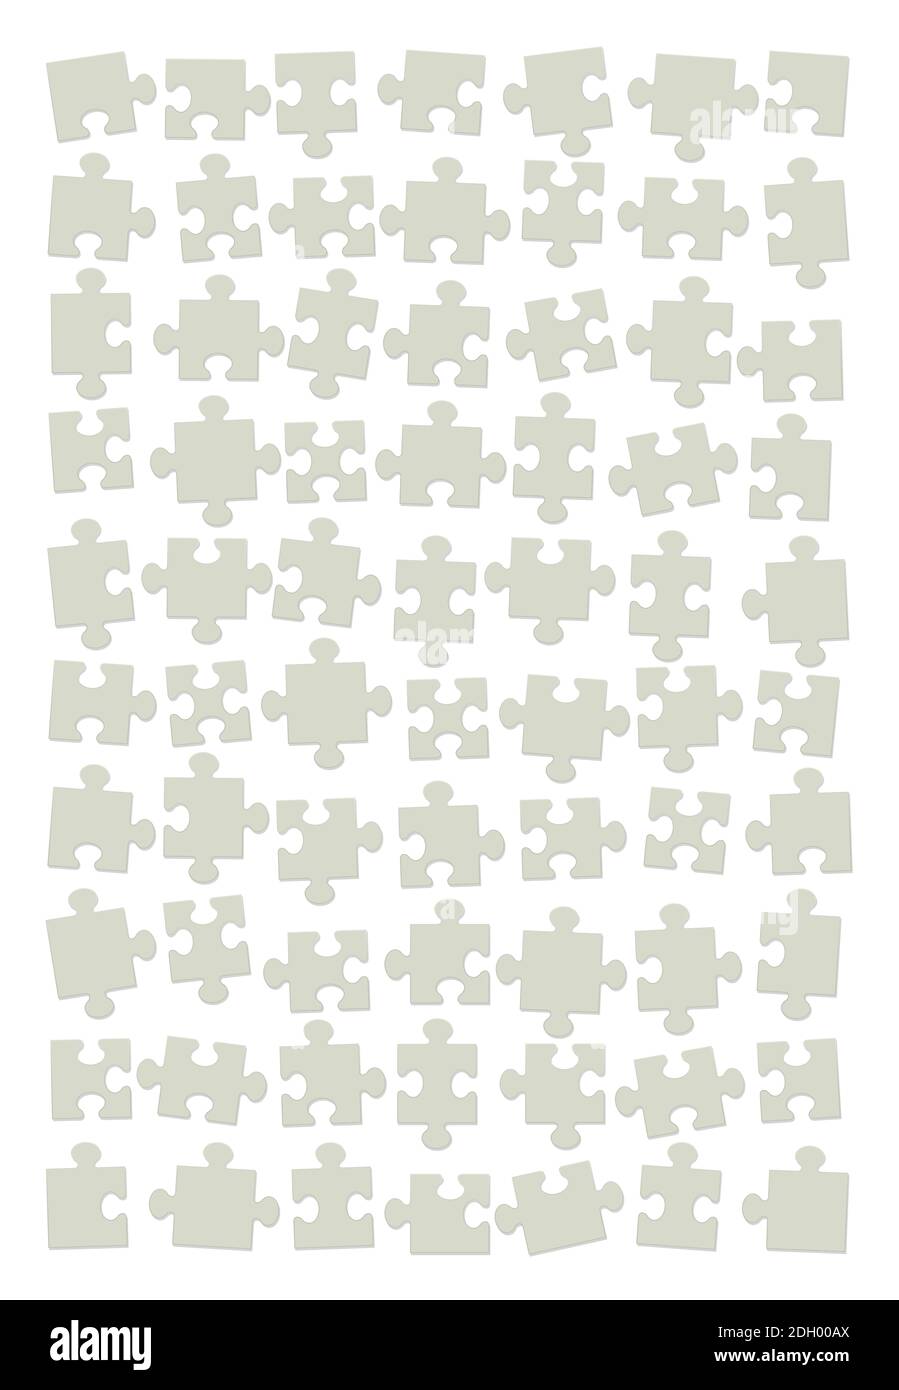 Puzzle lato posteriore. Pezzi di cartone verdi sparsi, mischiati e assortiti, ma non ancora messi insieme - illustrazione su sfondo bianco. Foto Stock